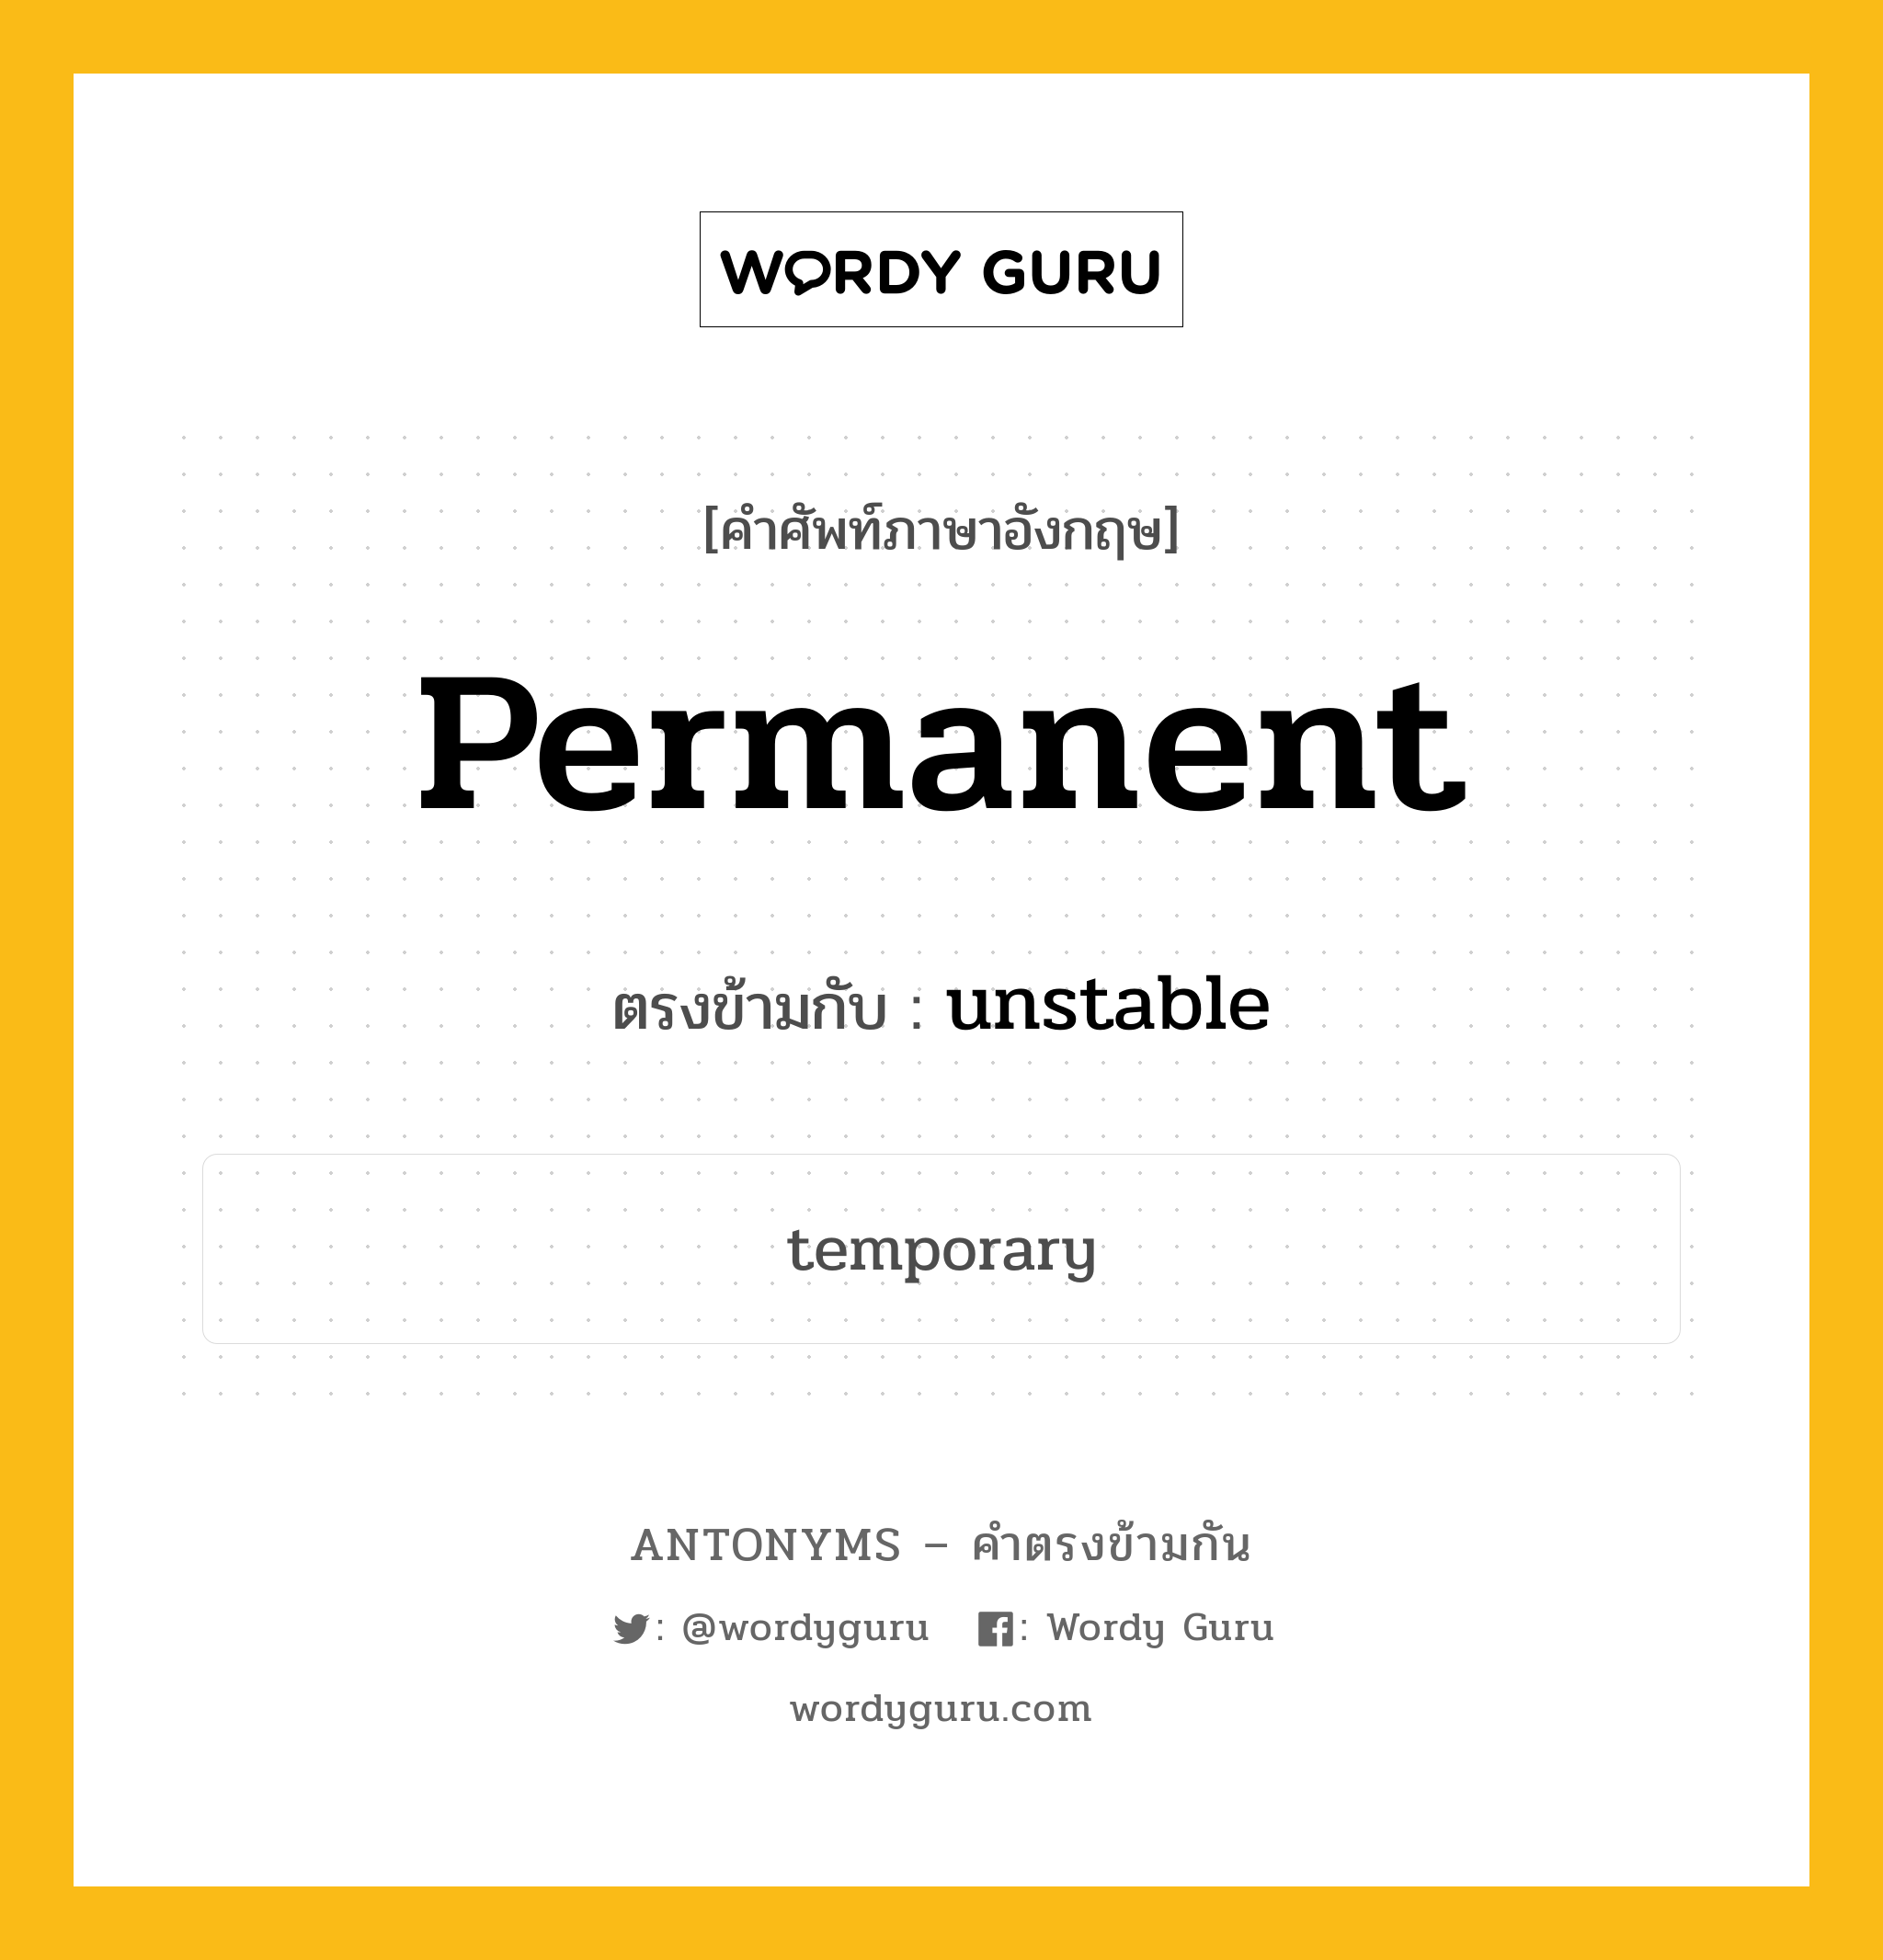 permanent เป็นคำตรงข้ามกับคำไหนบ้าง?, คำศัพท์ภาษาอังกฤษ permanent ตรงข้ามกับ unstable หมวด unstable